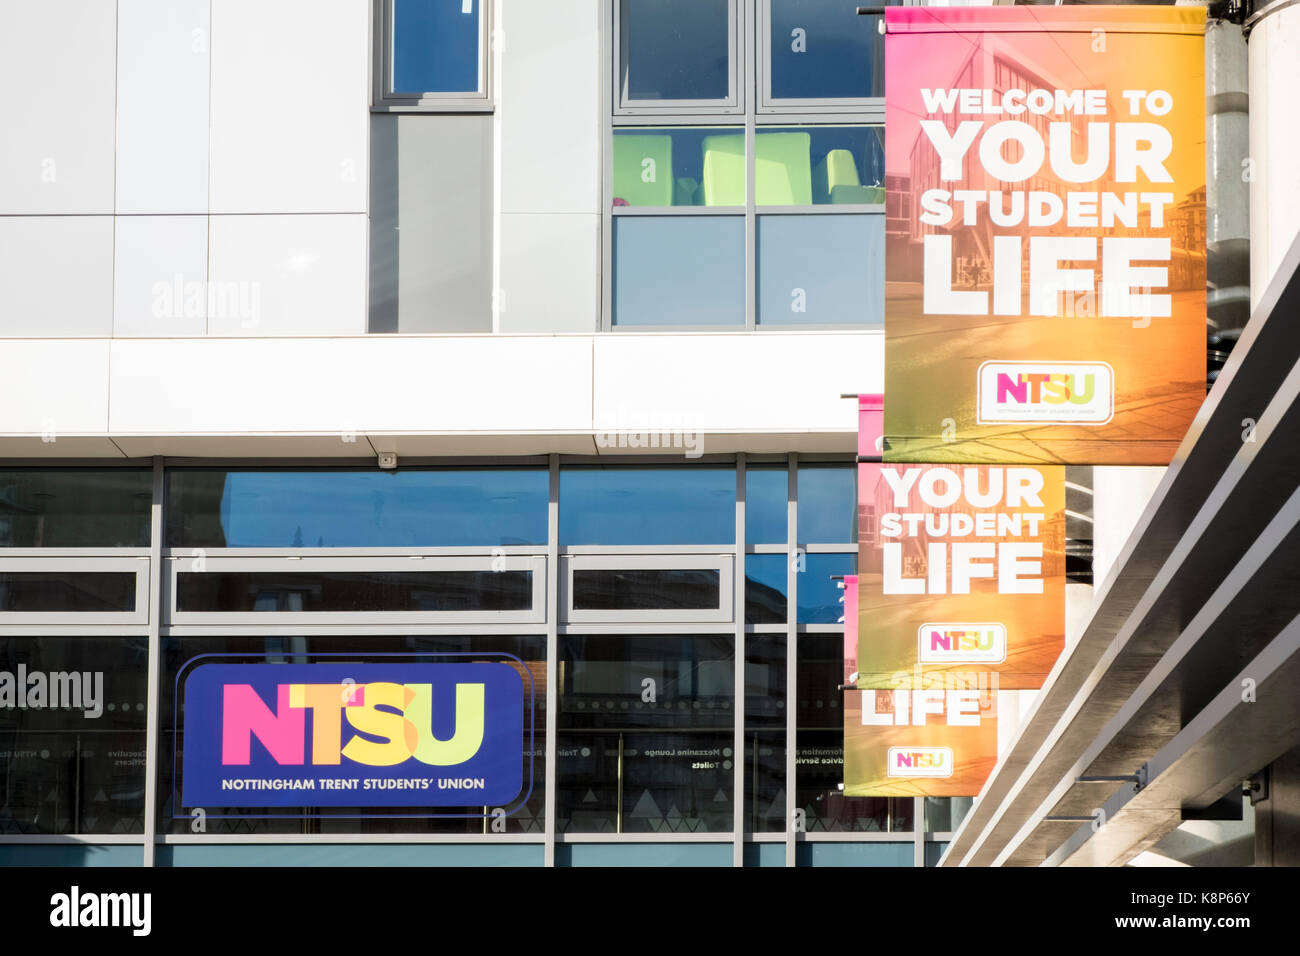 Nottingham Trent Students' Union (NTSU), Nottingham Trent University, Nottingham, England, UK Stock Photo